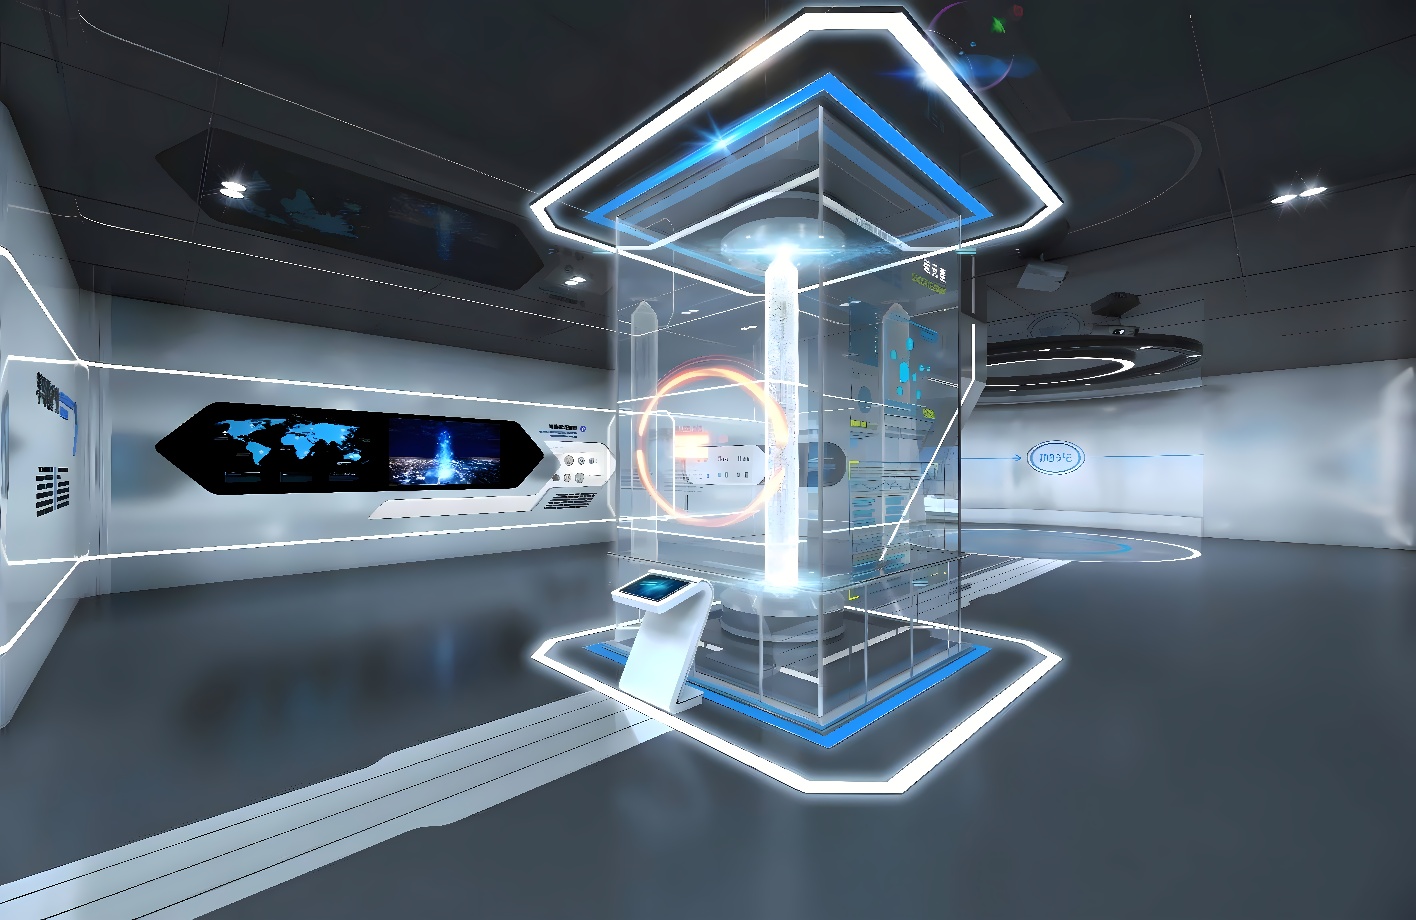 这是一张现代科技风格的室内设计图，以蓝白色调为主，有中心信息柱和周围的多媒体展示屏幕，给人未来感。